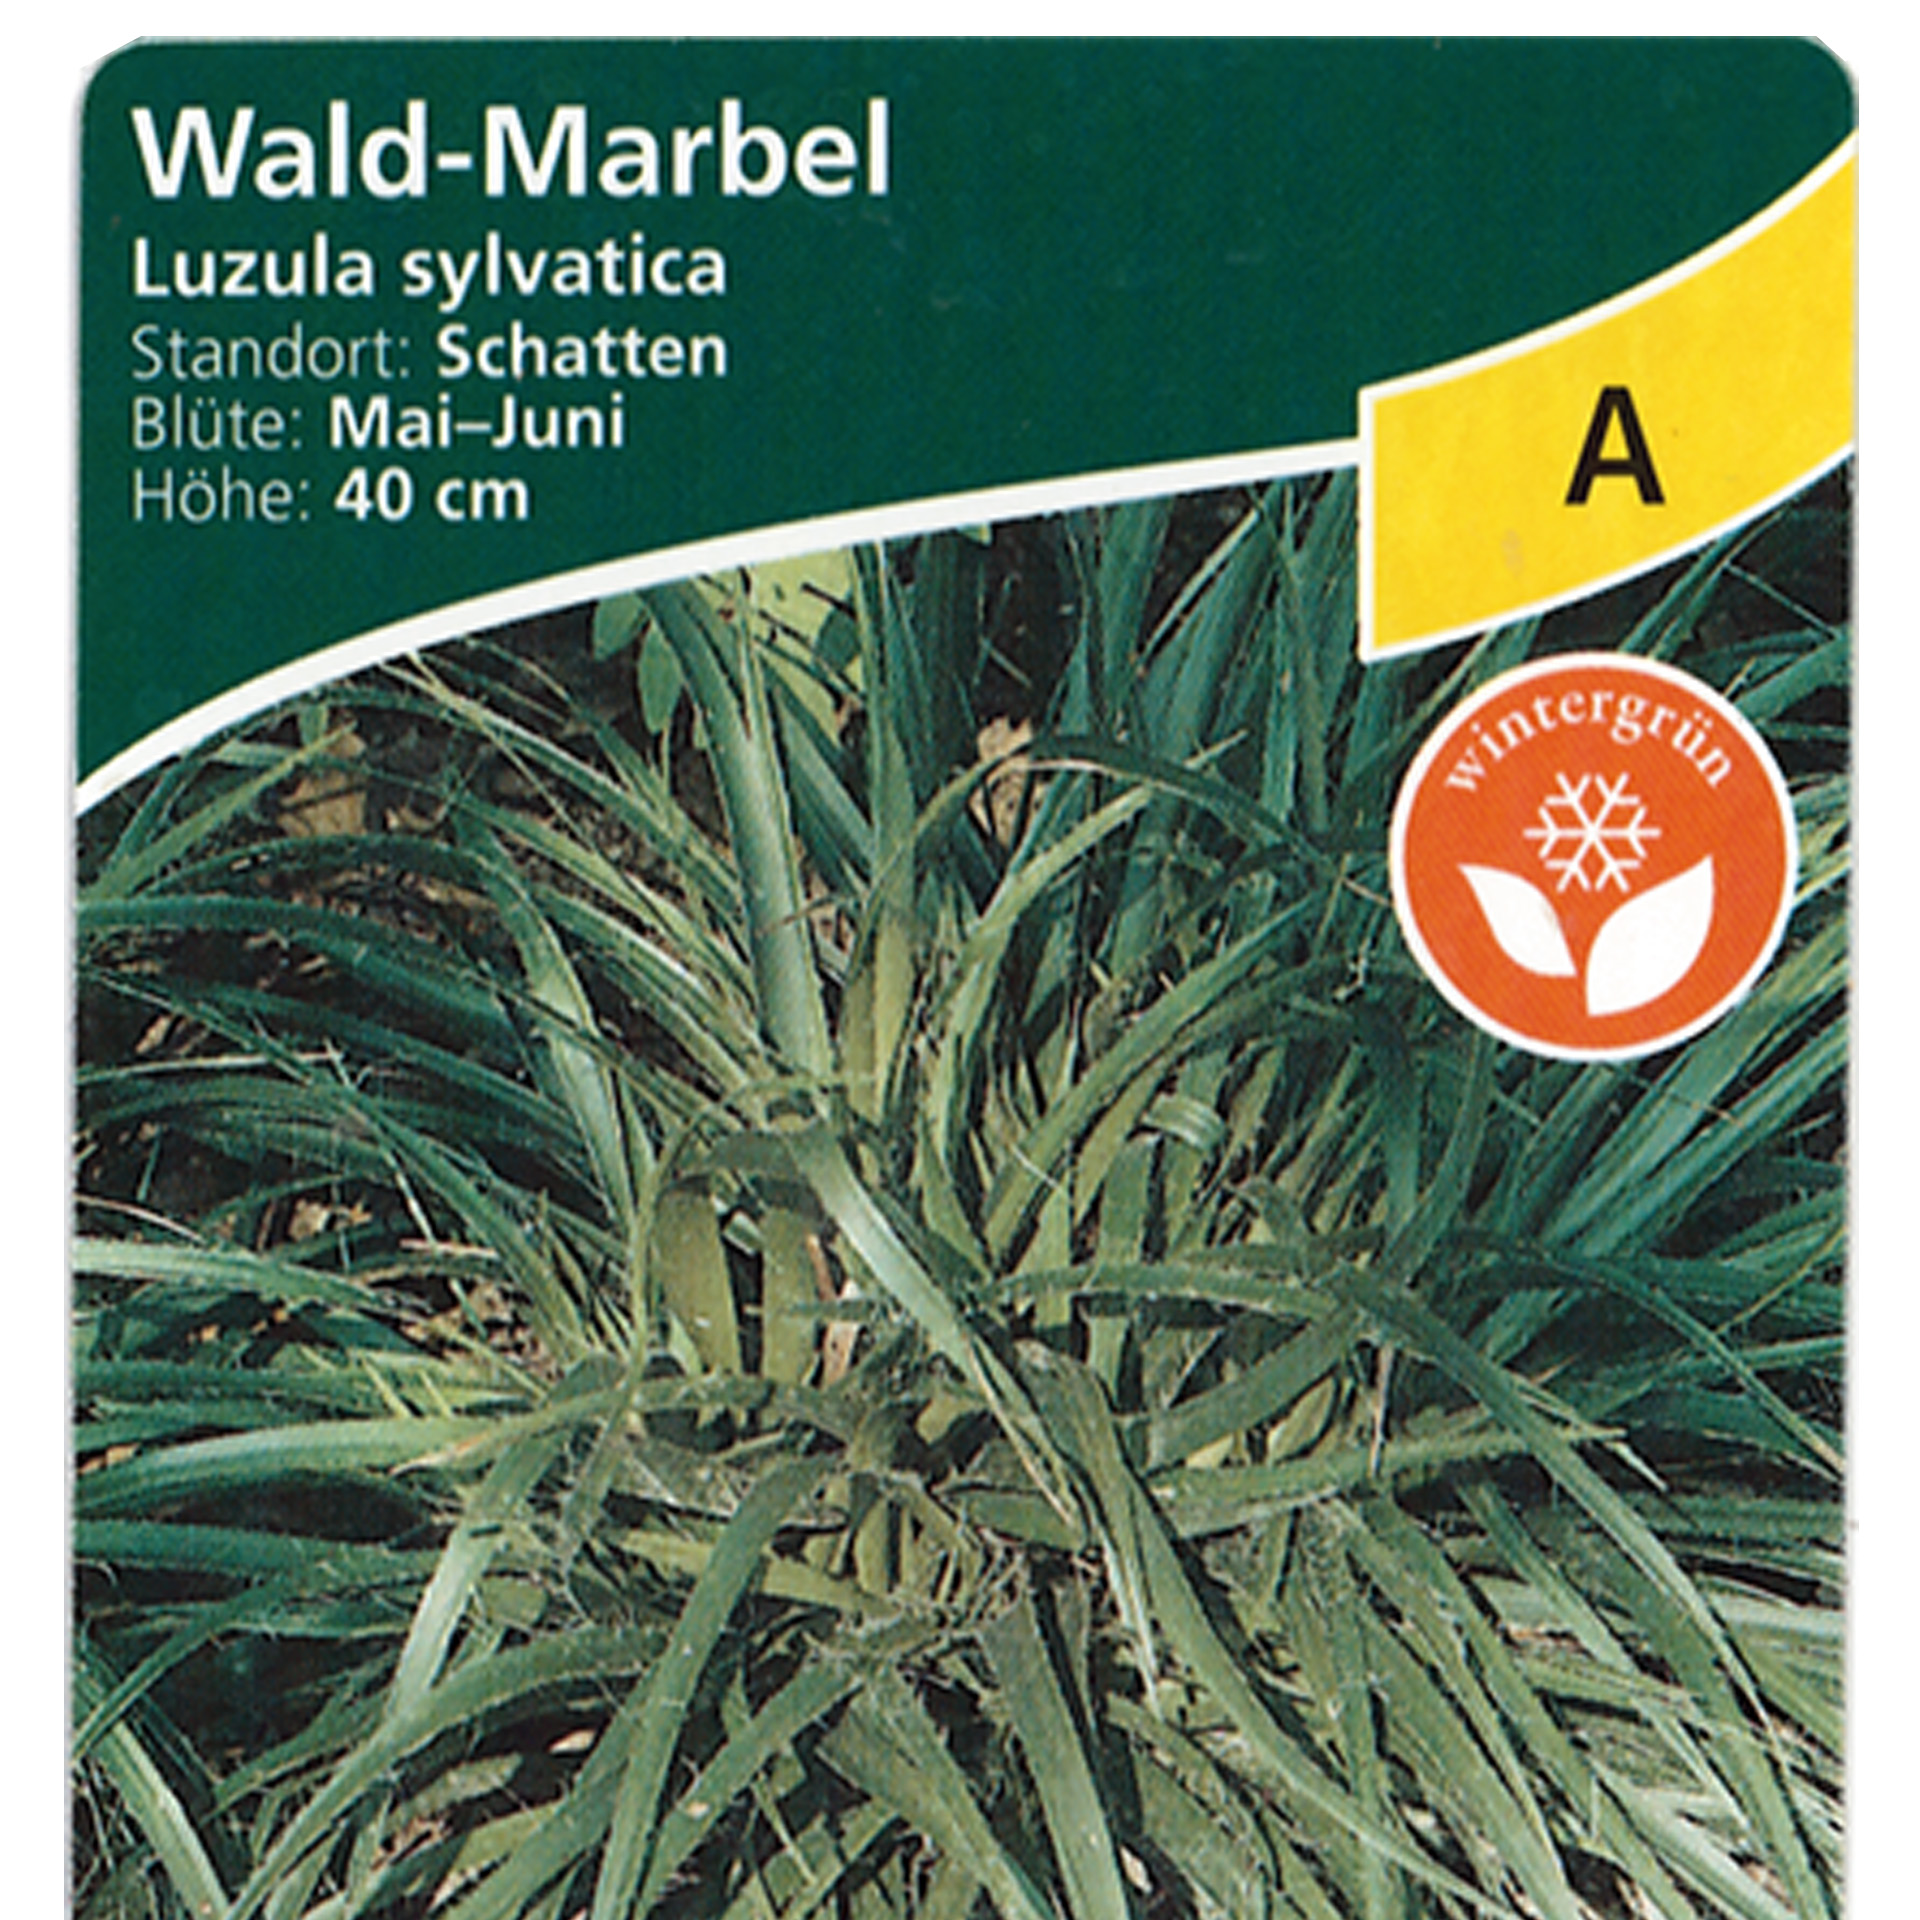 Wald-Marbel